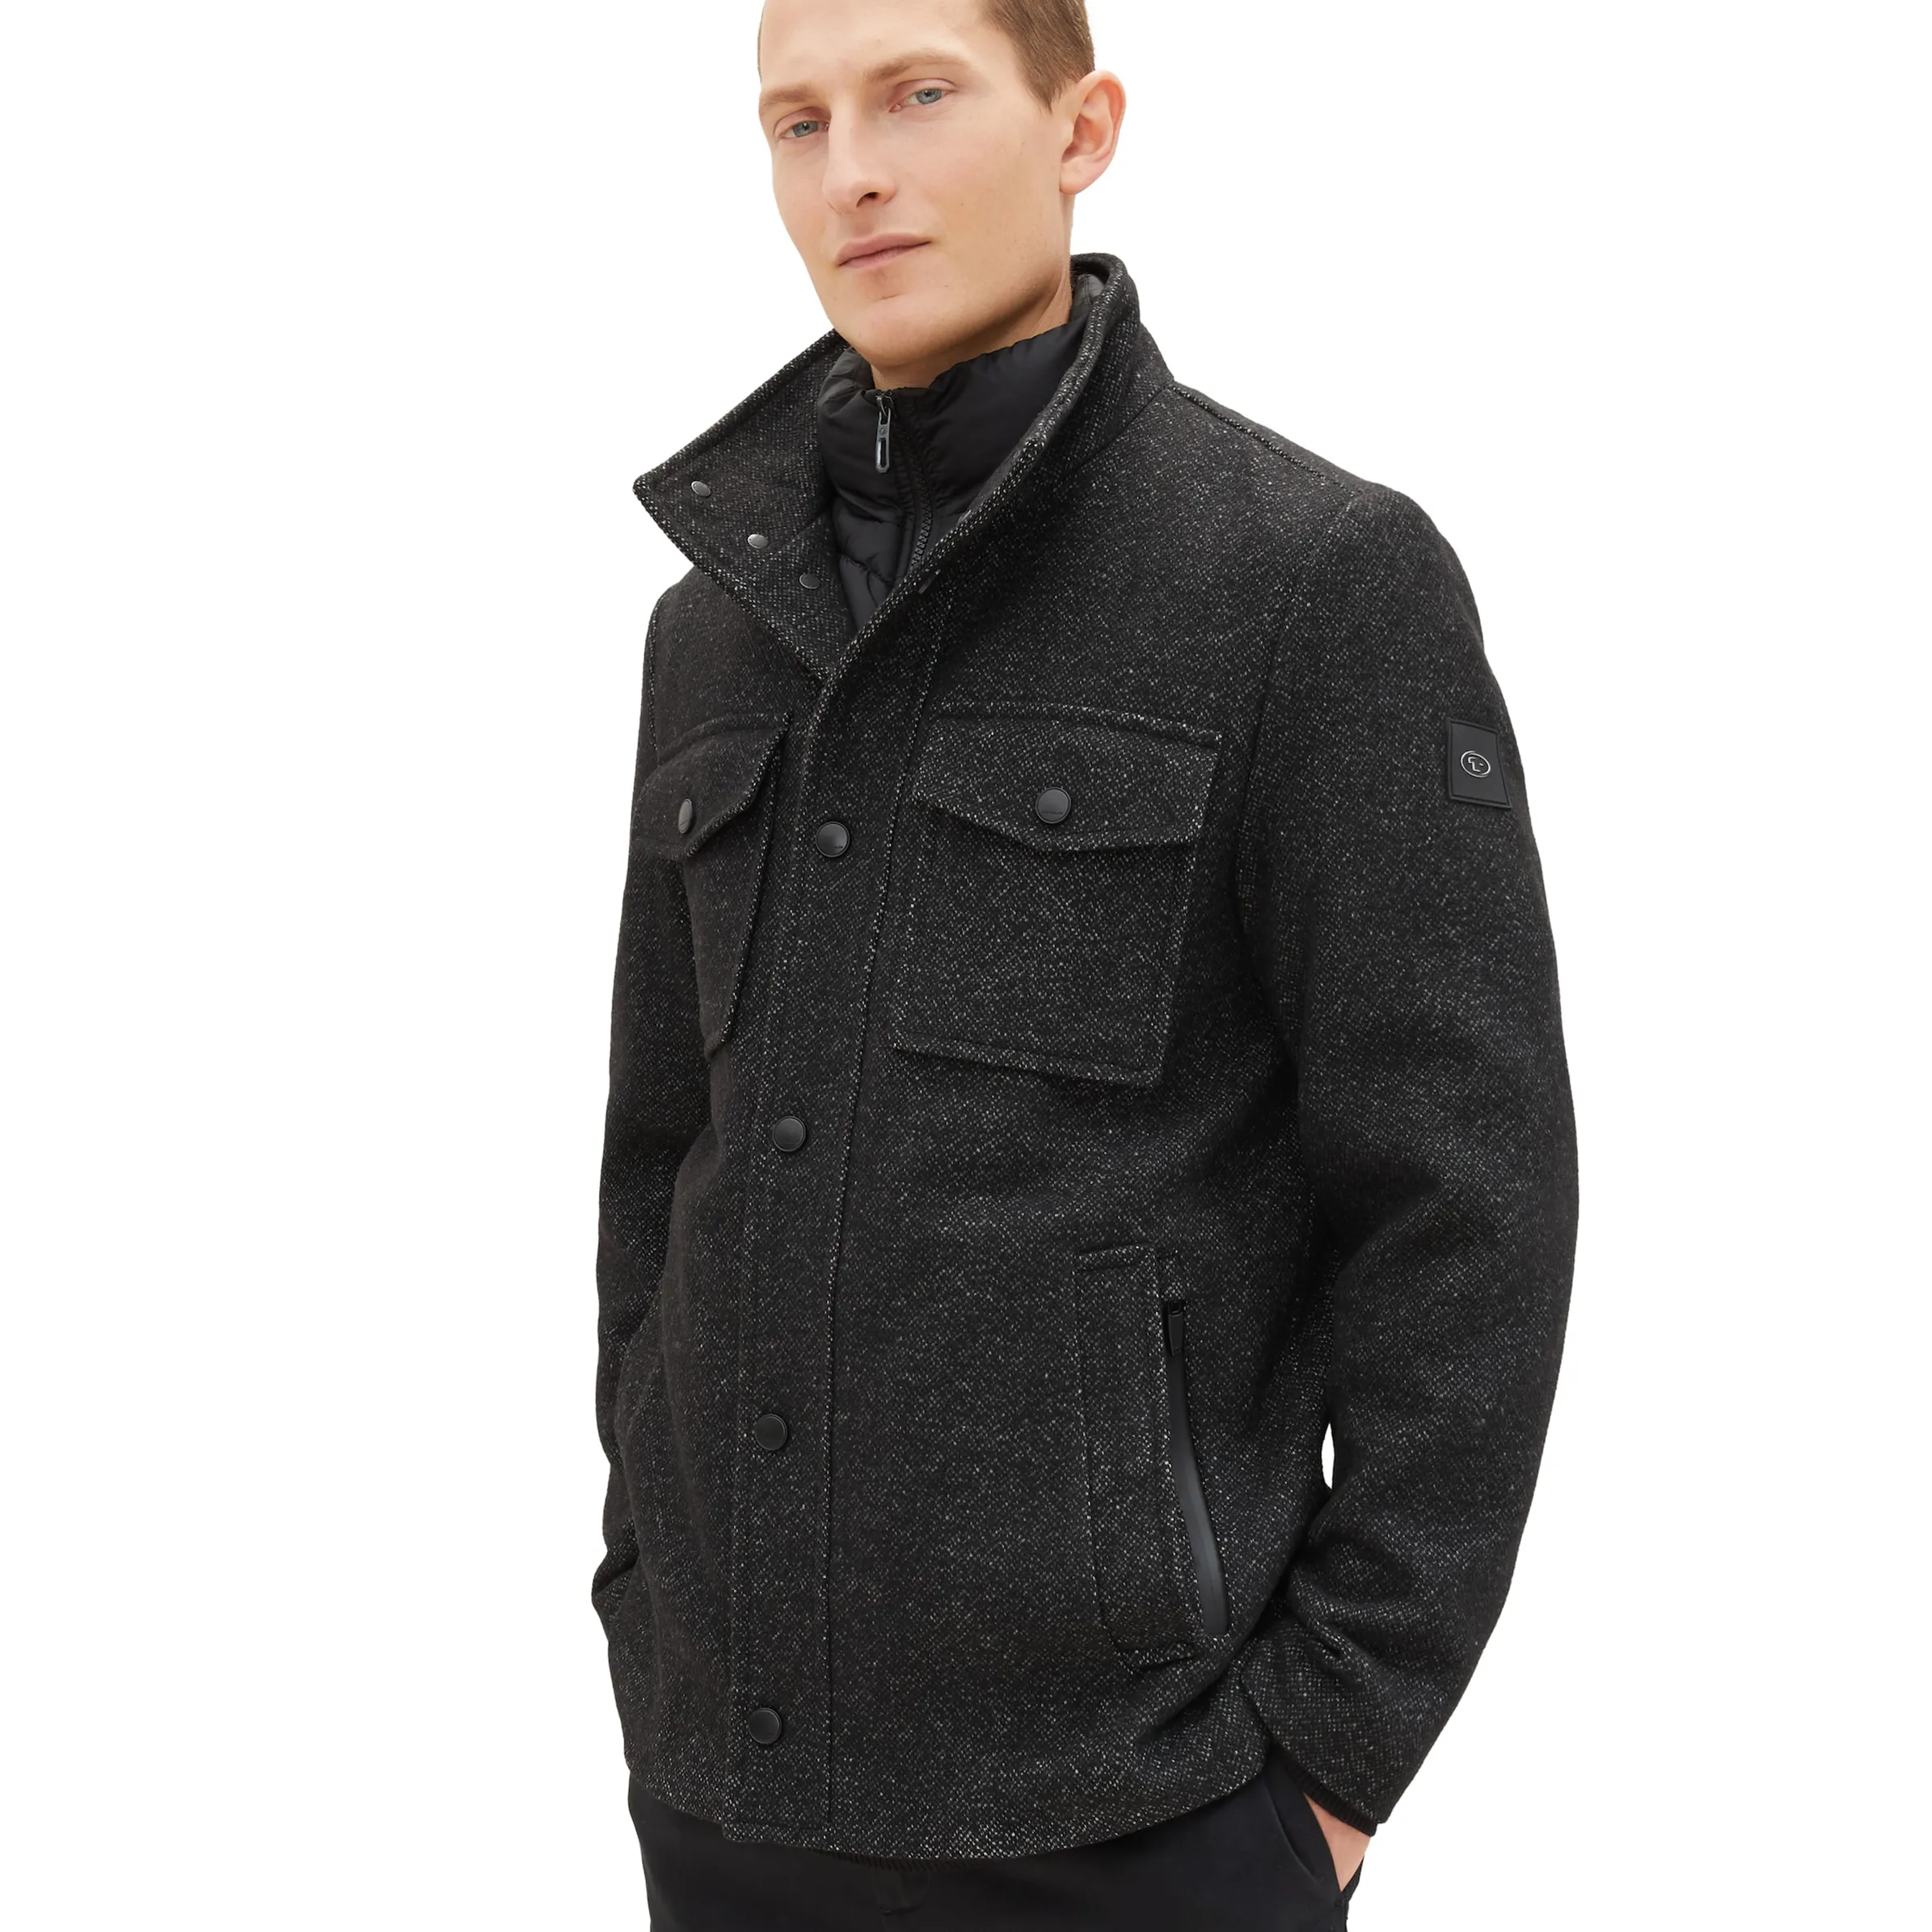 Tom Tailor 1037345 wool jacket 2 in 1 Grau 884289 32521 5